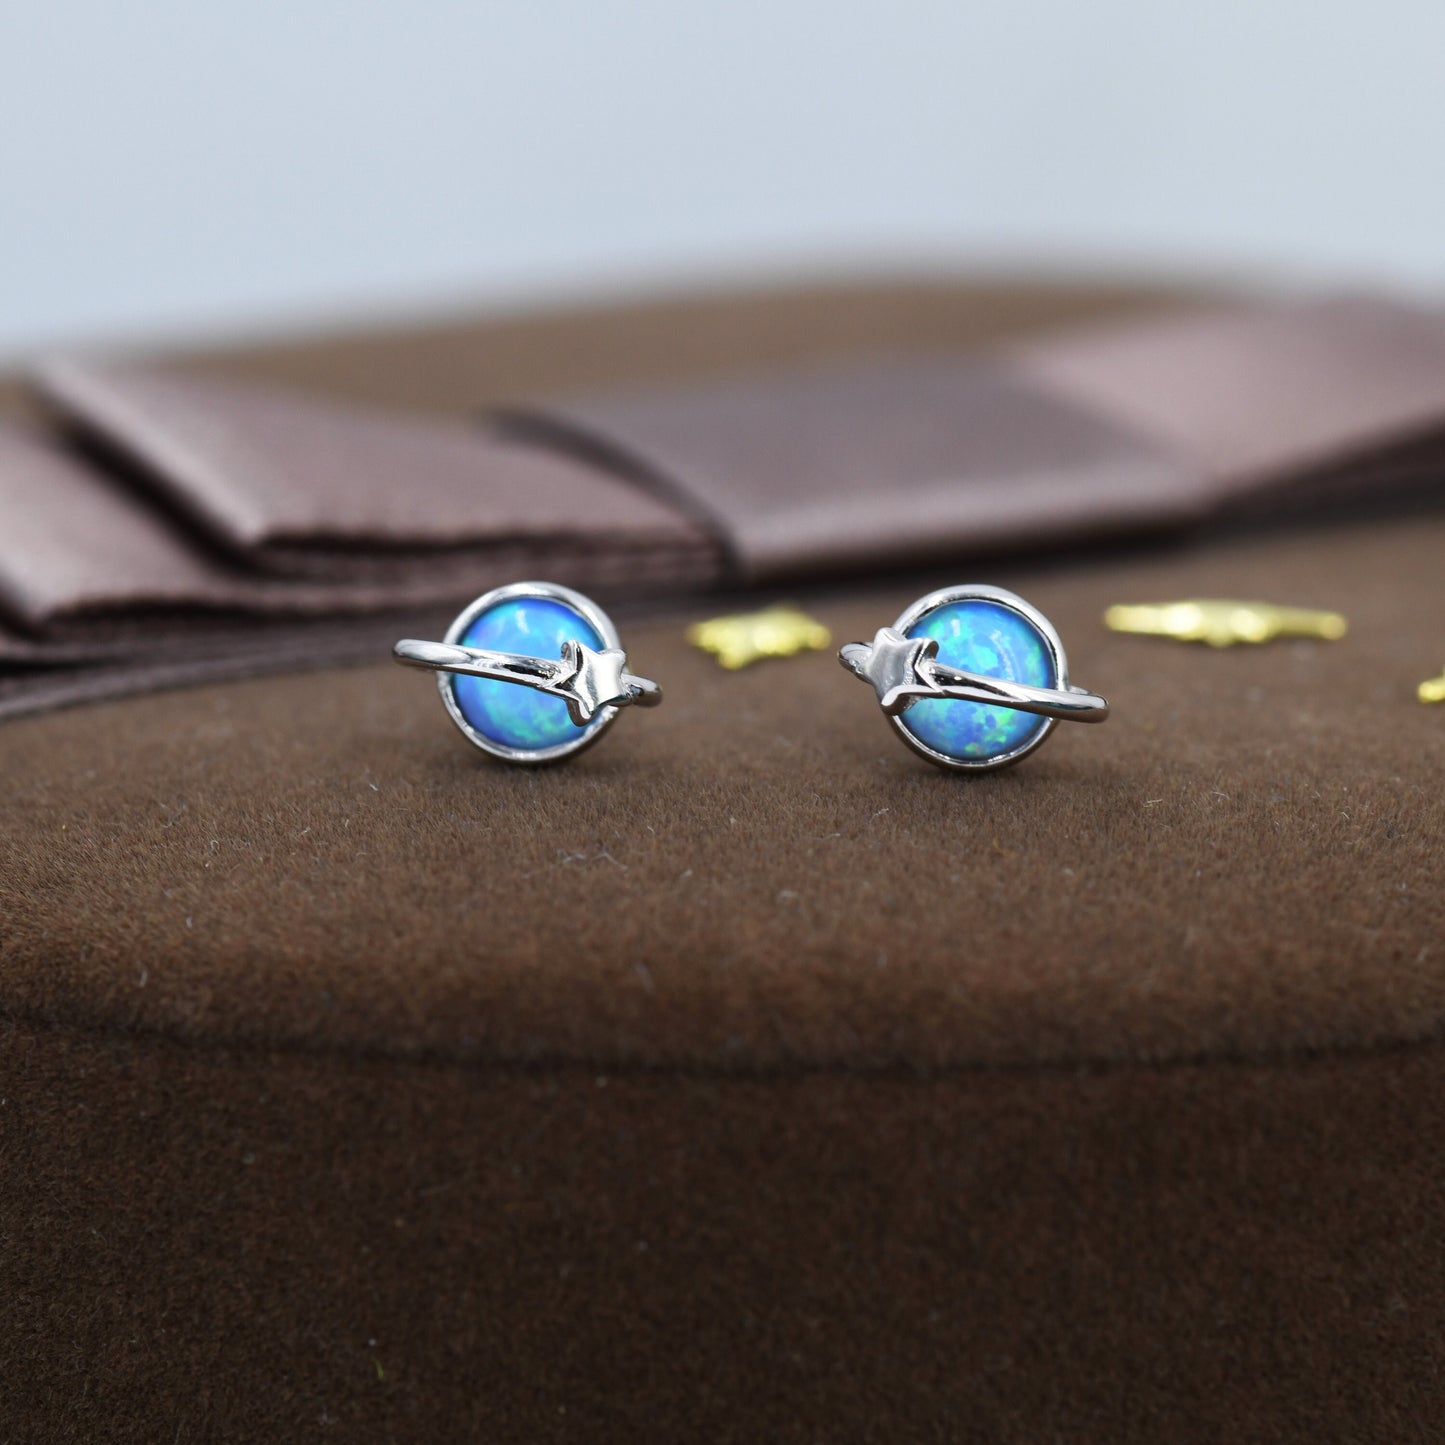 Blue Opal Planet Stud Earrings in Sterling Silver, Lab Opal Planet Earrings, Fire Opal Saturn Earrings